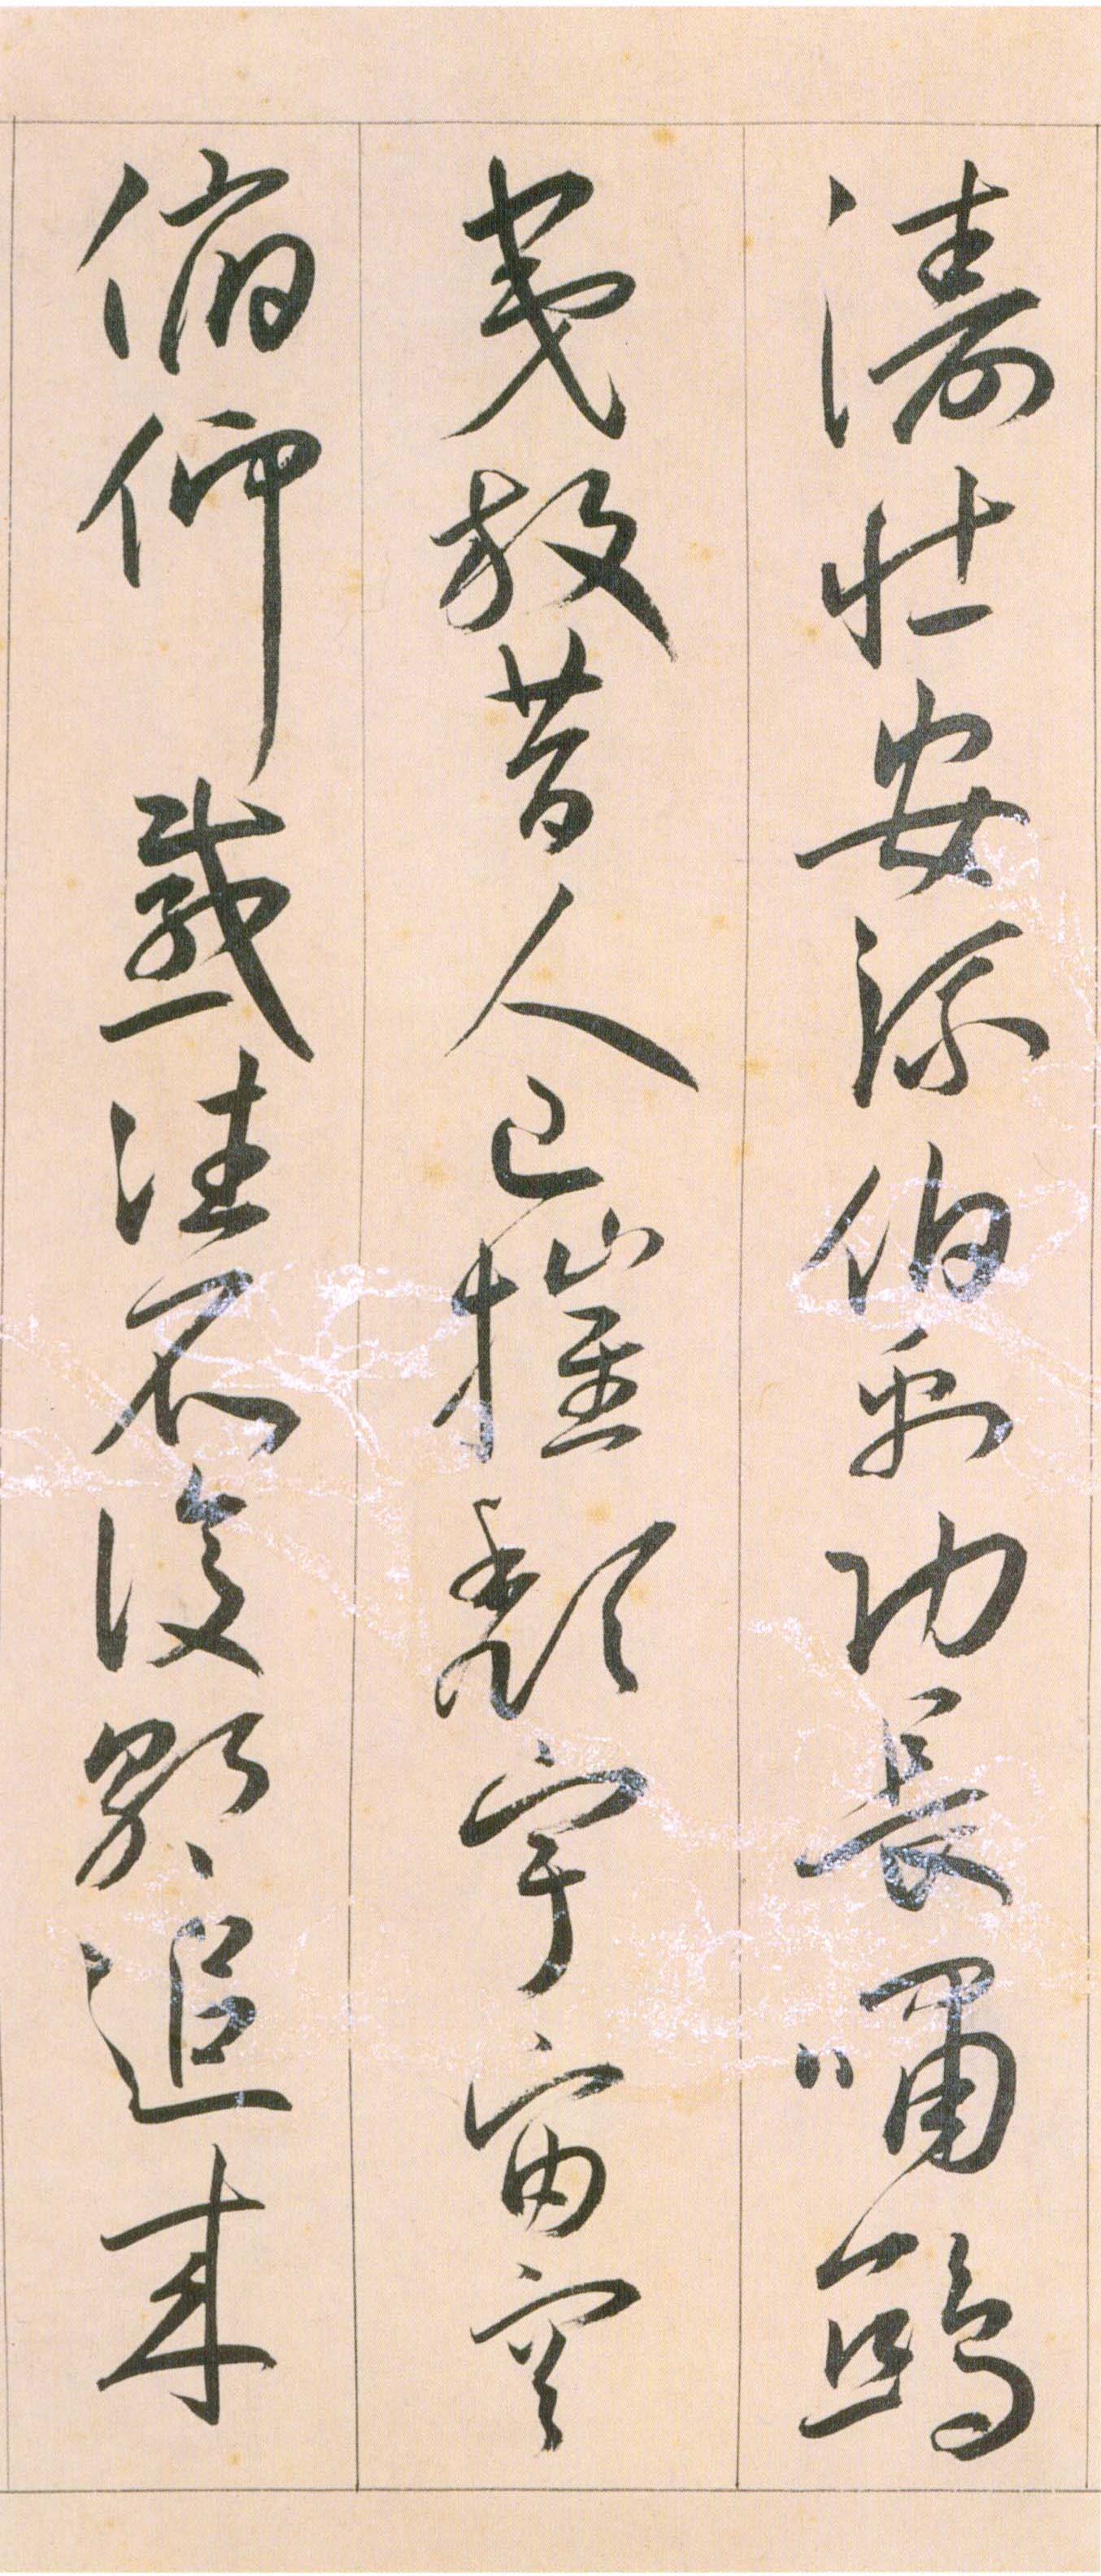 王宠《自书游包山诗》卷-天津艺术博物院藏(图11)